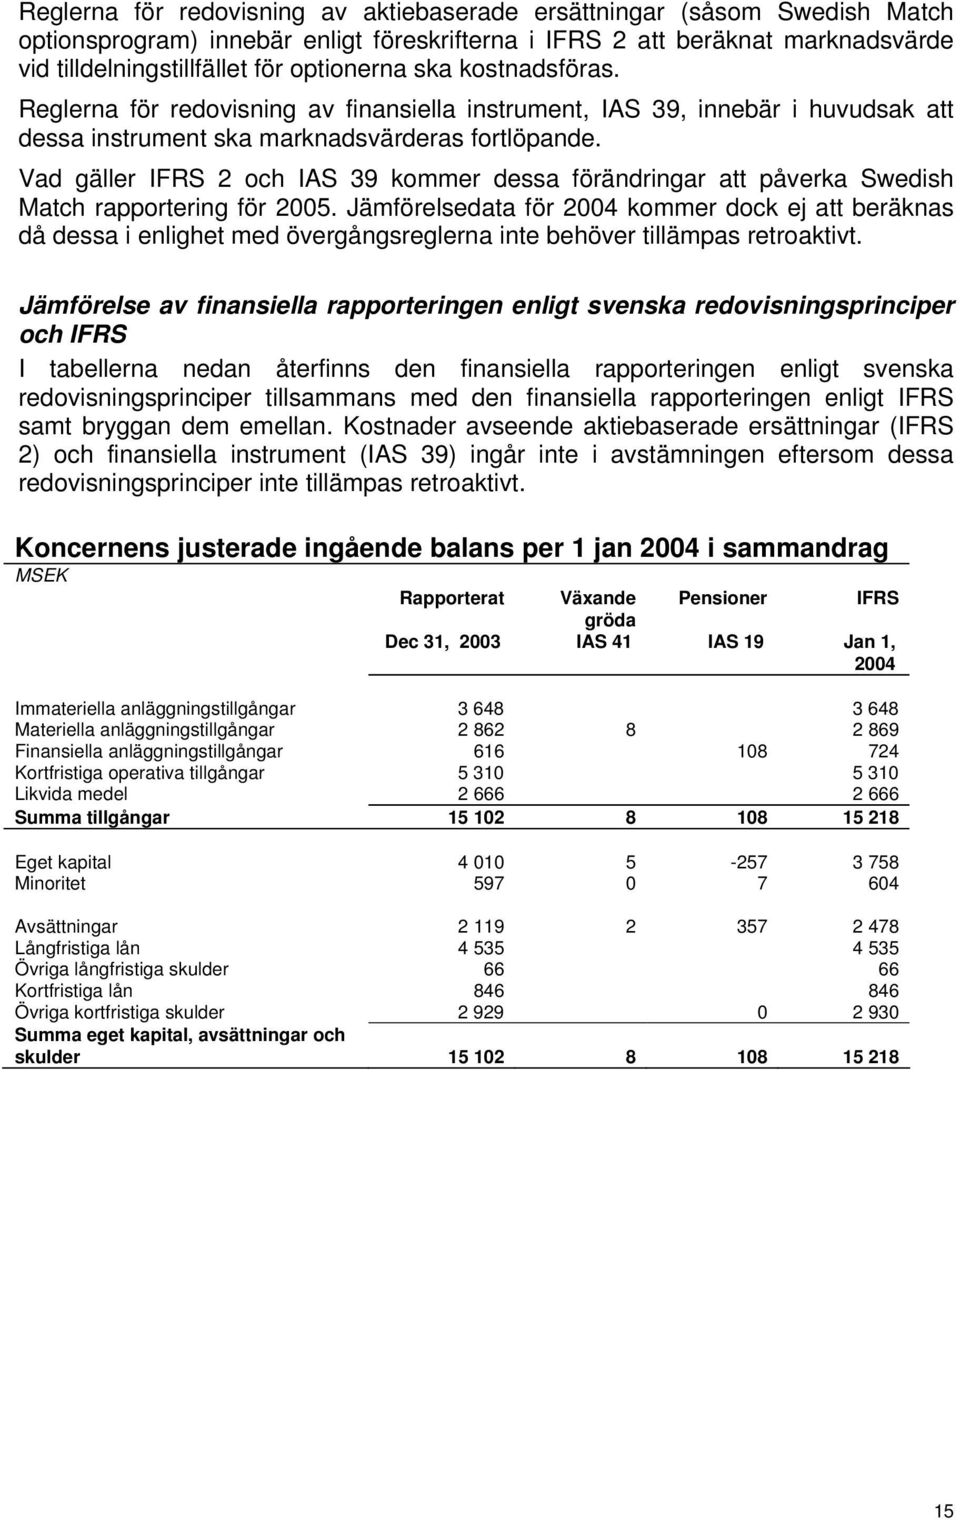 Vad gäller IFRS 2 och IAS 39 kommer dessa förändringar att påverka Swedish Match rapportering för 2005.